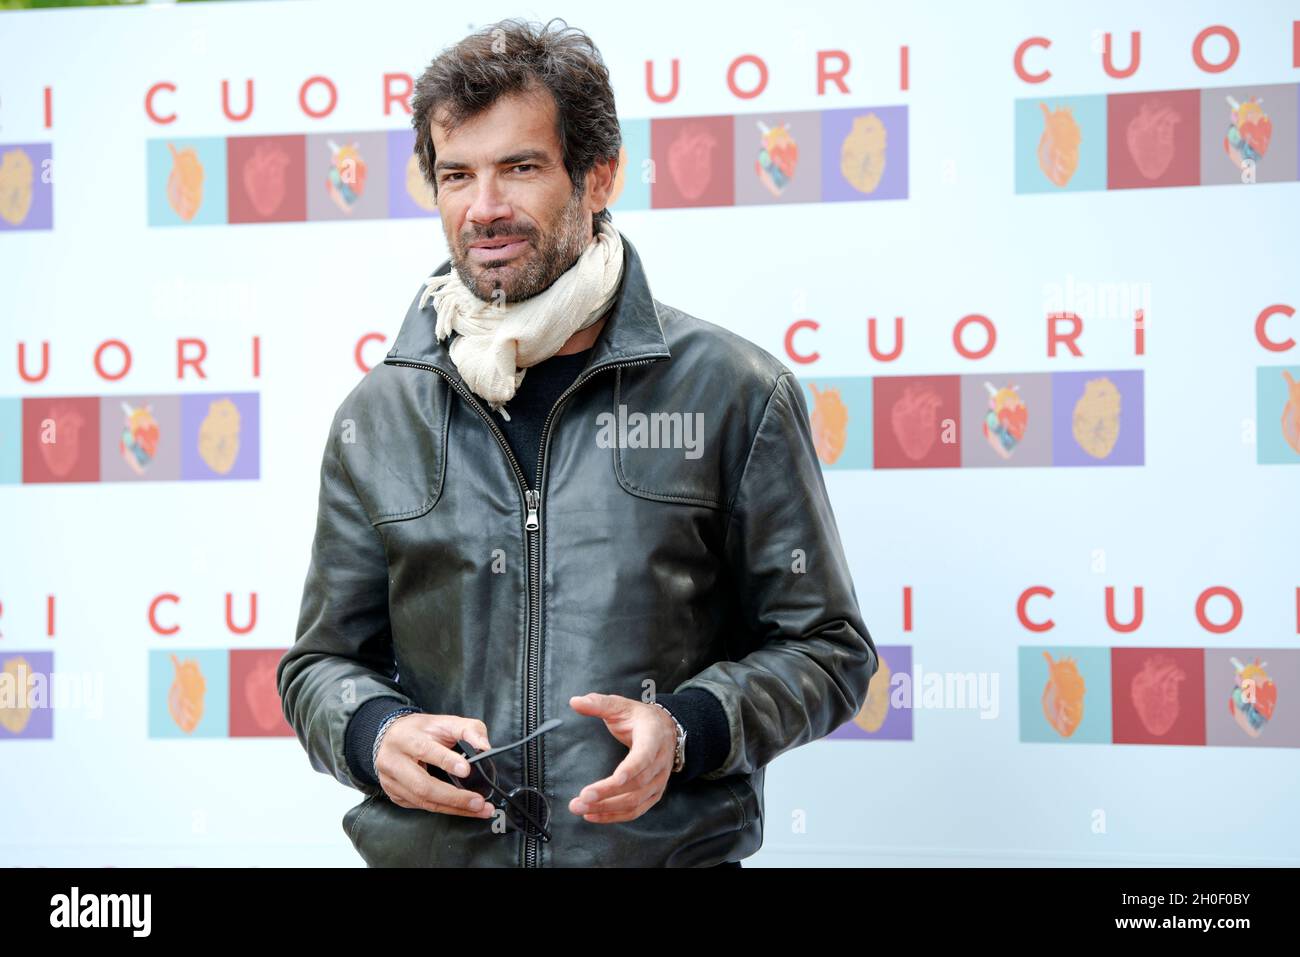 Marco Bonetti attending the photocall of Cuori at Casa del Cinema, Rome Stock Photo